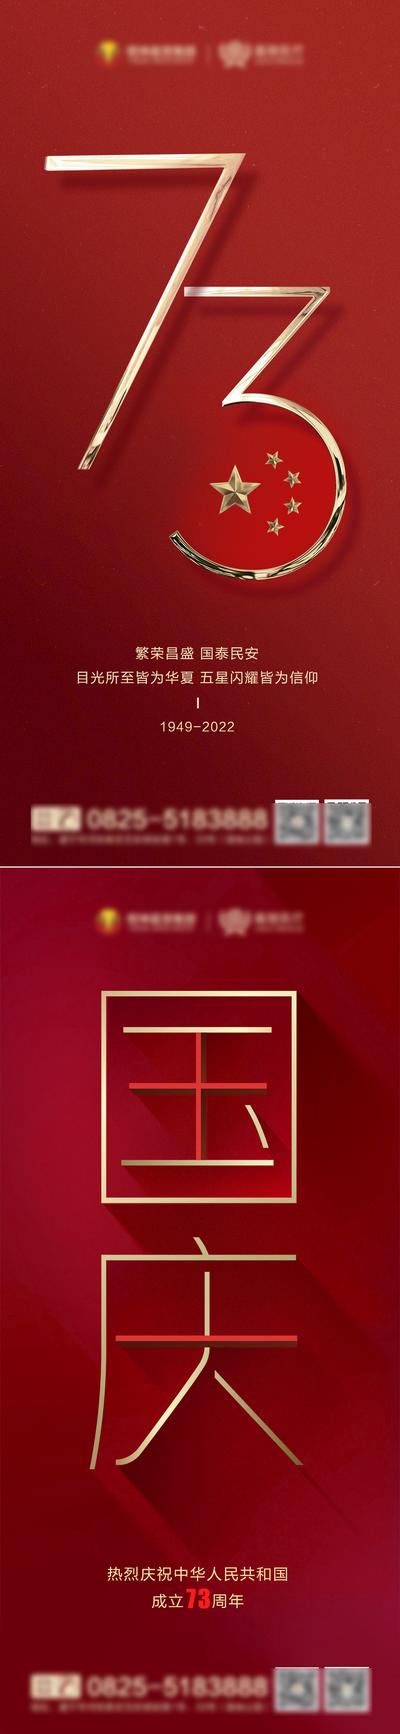 南门网 海报 公历节日 国庆节 73周年 文字 数字 红金